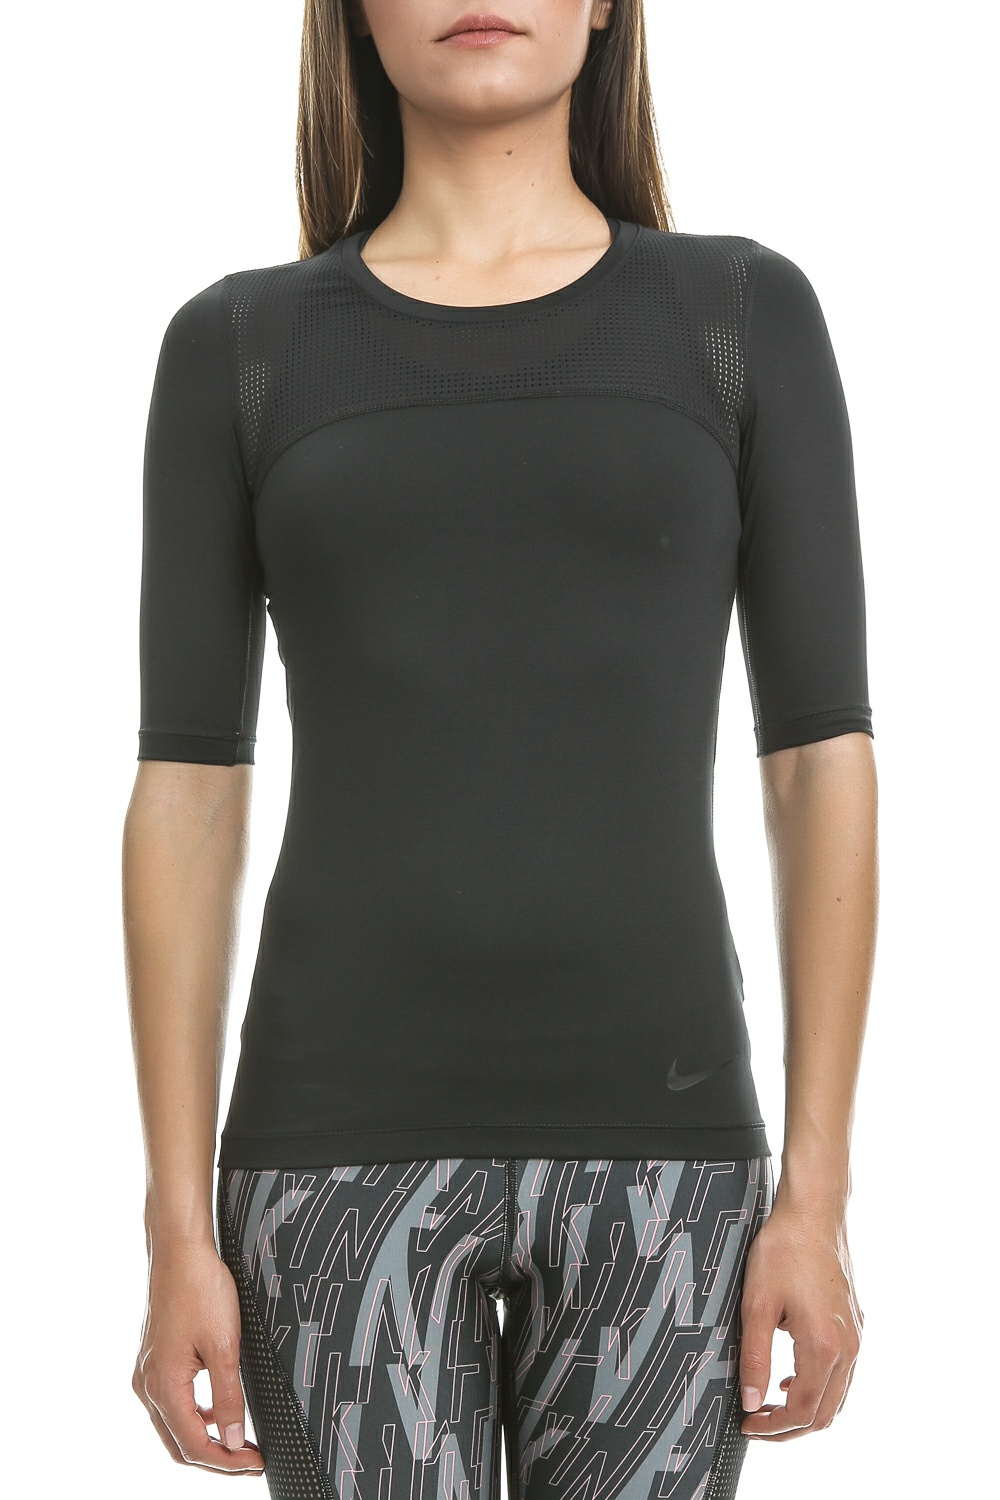 Γυναικεία/Ρούχα/Αθλητικά/T-shirt-Τοπ NIKE - Γυναικεία αθλητική κοντομάνικη μπλούζα Nike μαύρη